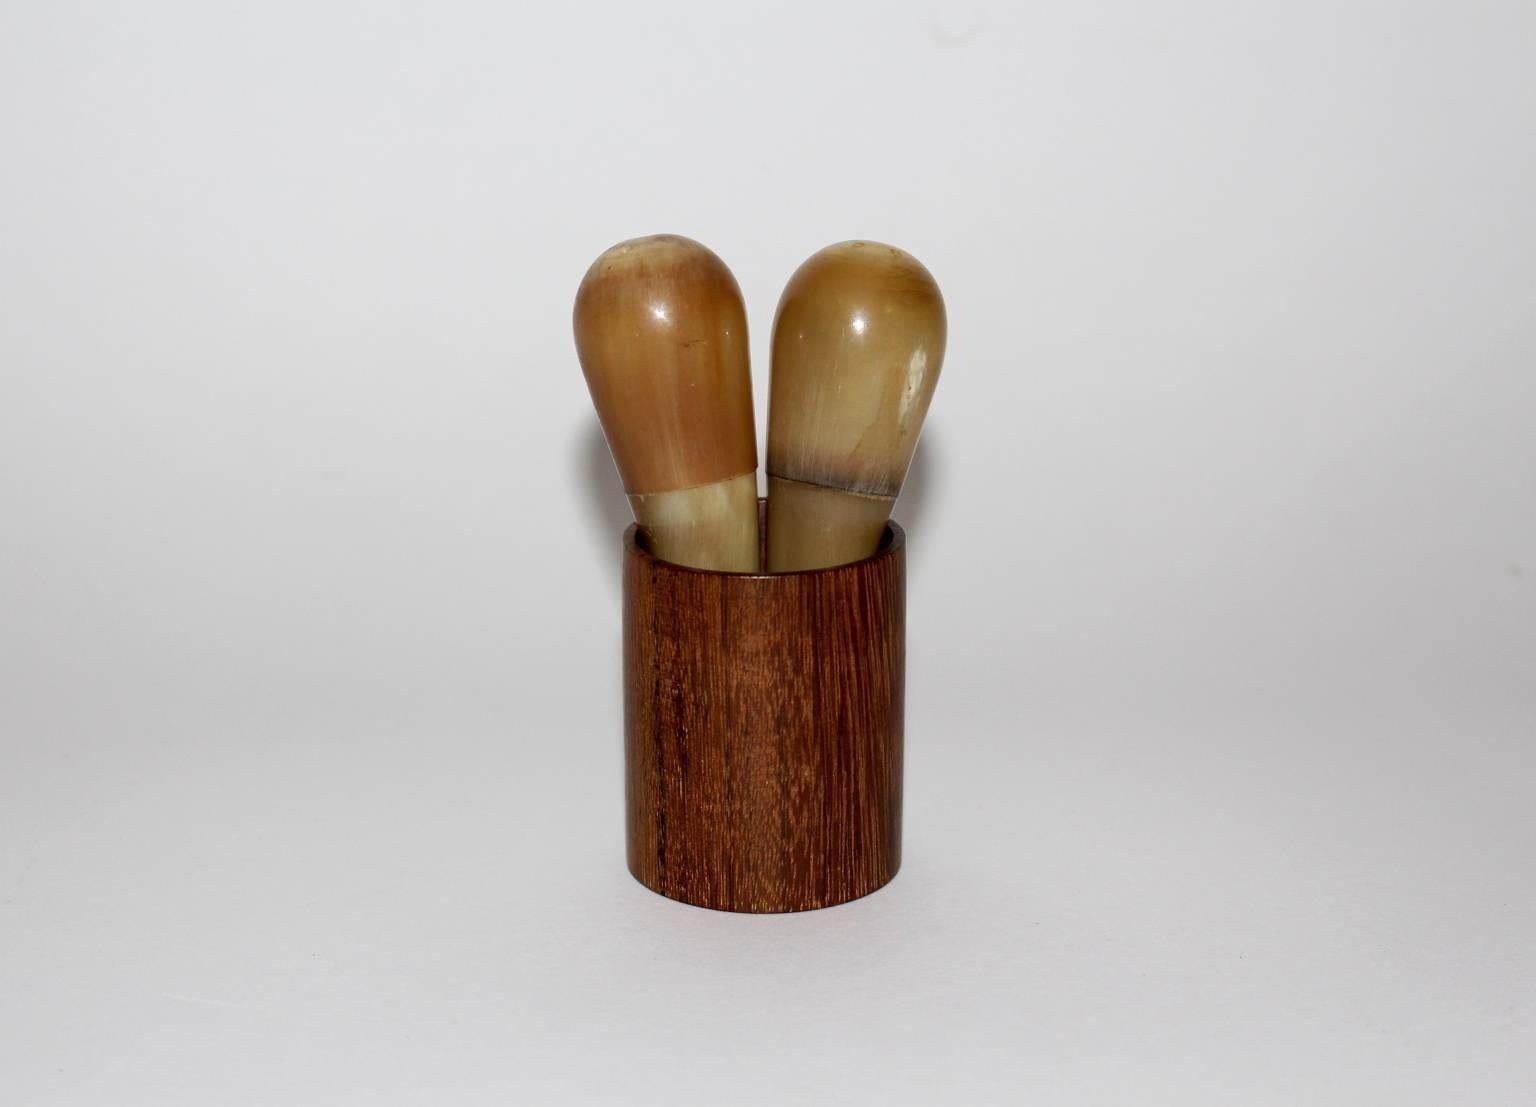 Cette salière et poivrière présentée dans une coupe en bois présente un grand design de Carl Auböck, Vienne 1950s.
Deux shakers en corne, que l'on a plaisir à tenir en main, et une tasse en bois composent cette vaisselle délicate.
L'état vintage est